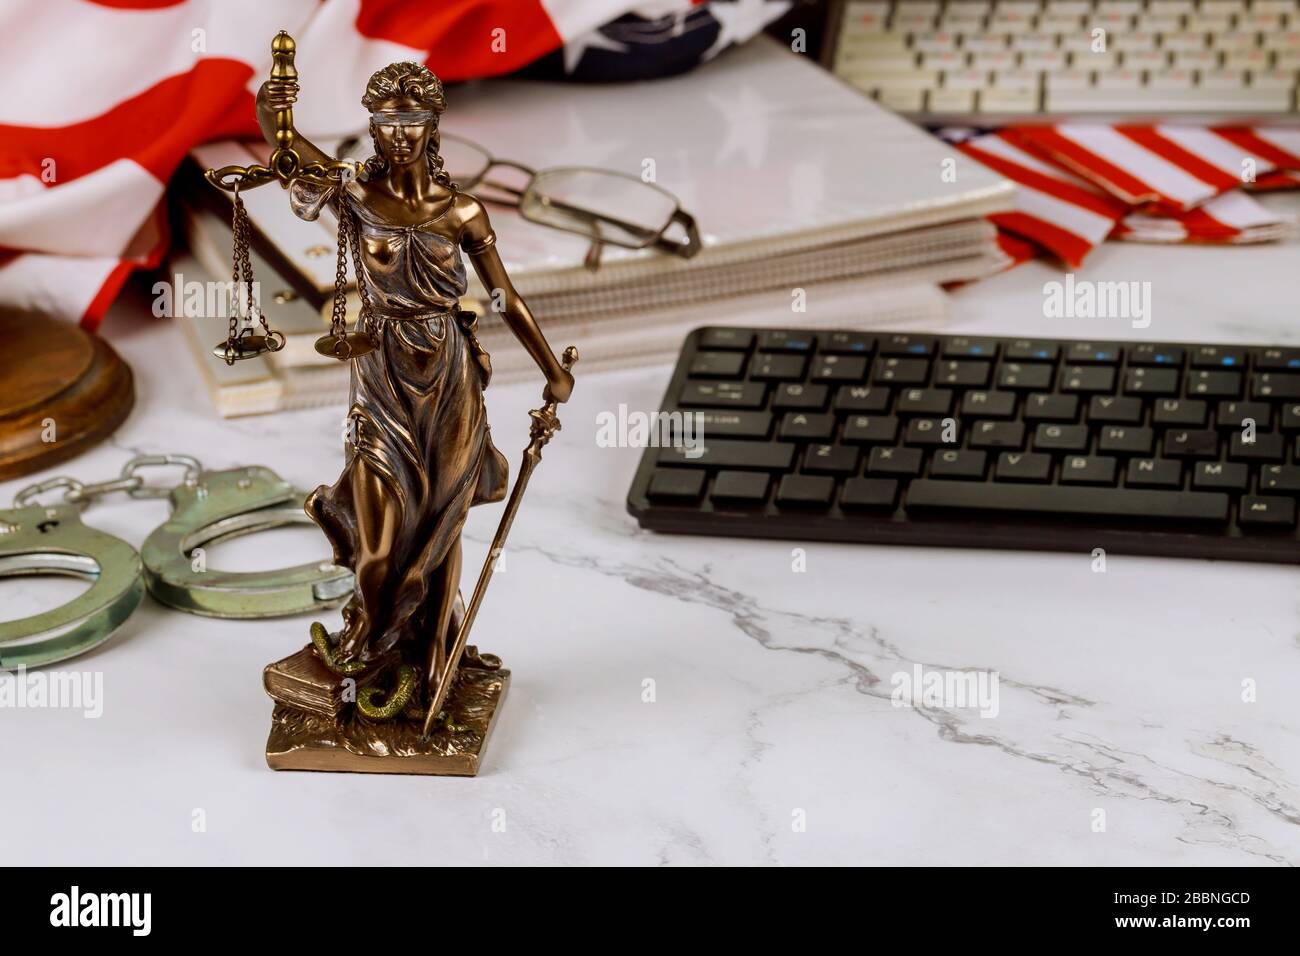 Bureau juridique des avocats et des avocats modèle juridique bronze statue de menottes métalliques, juge juridique justice service Banque D'Images